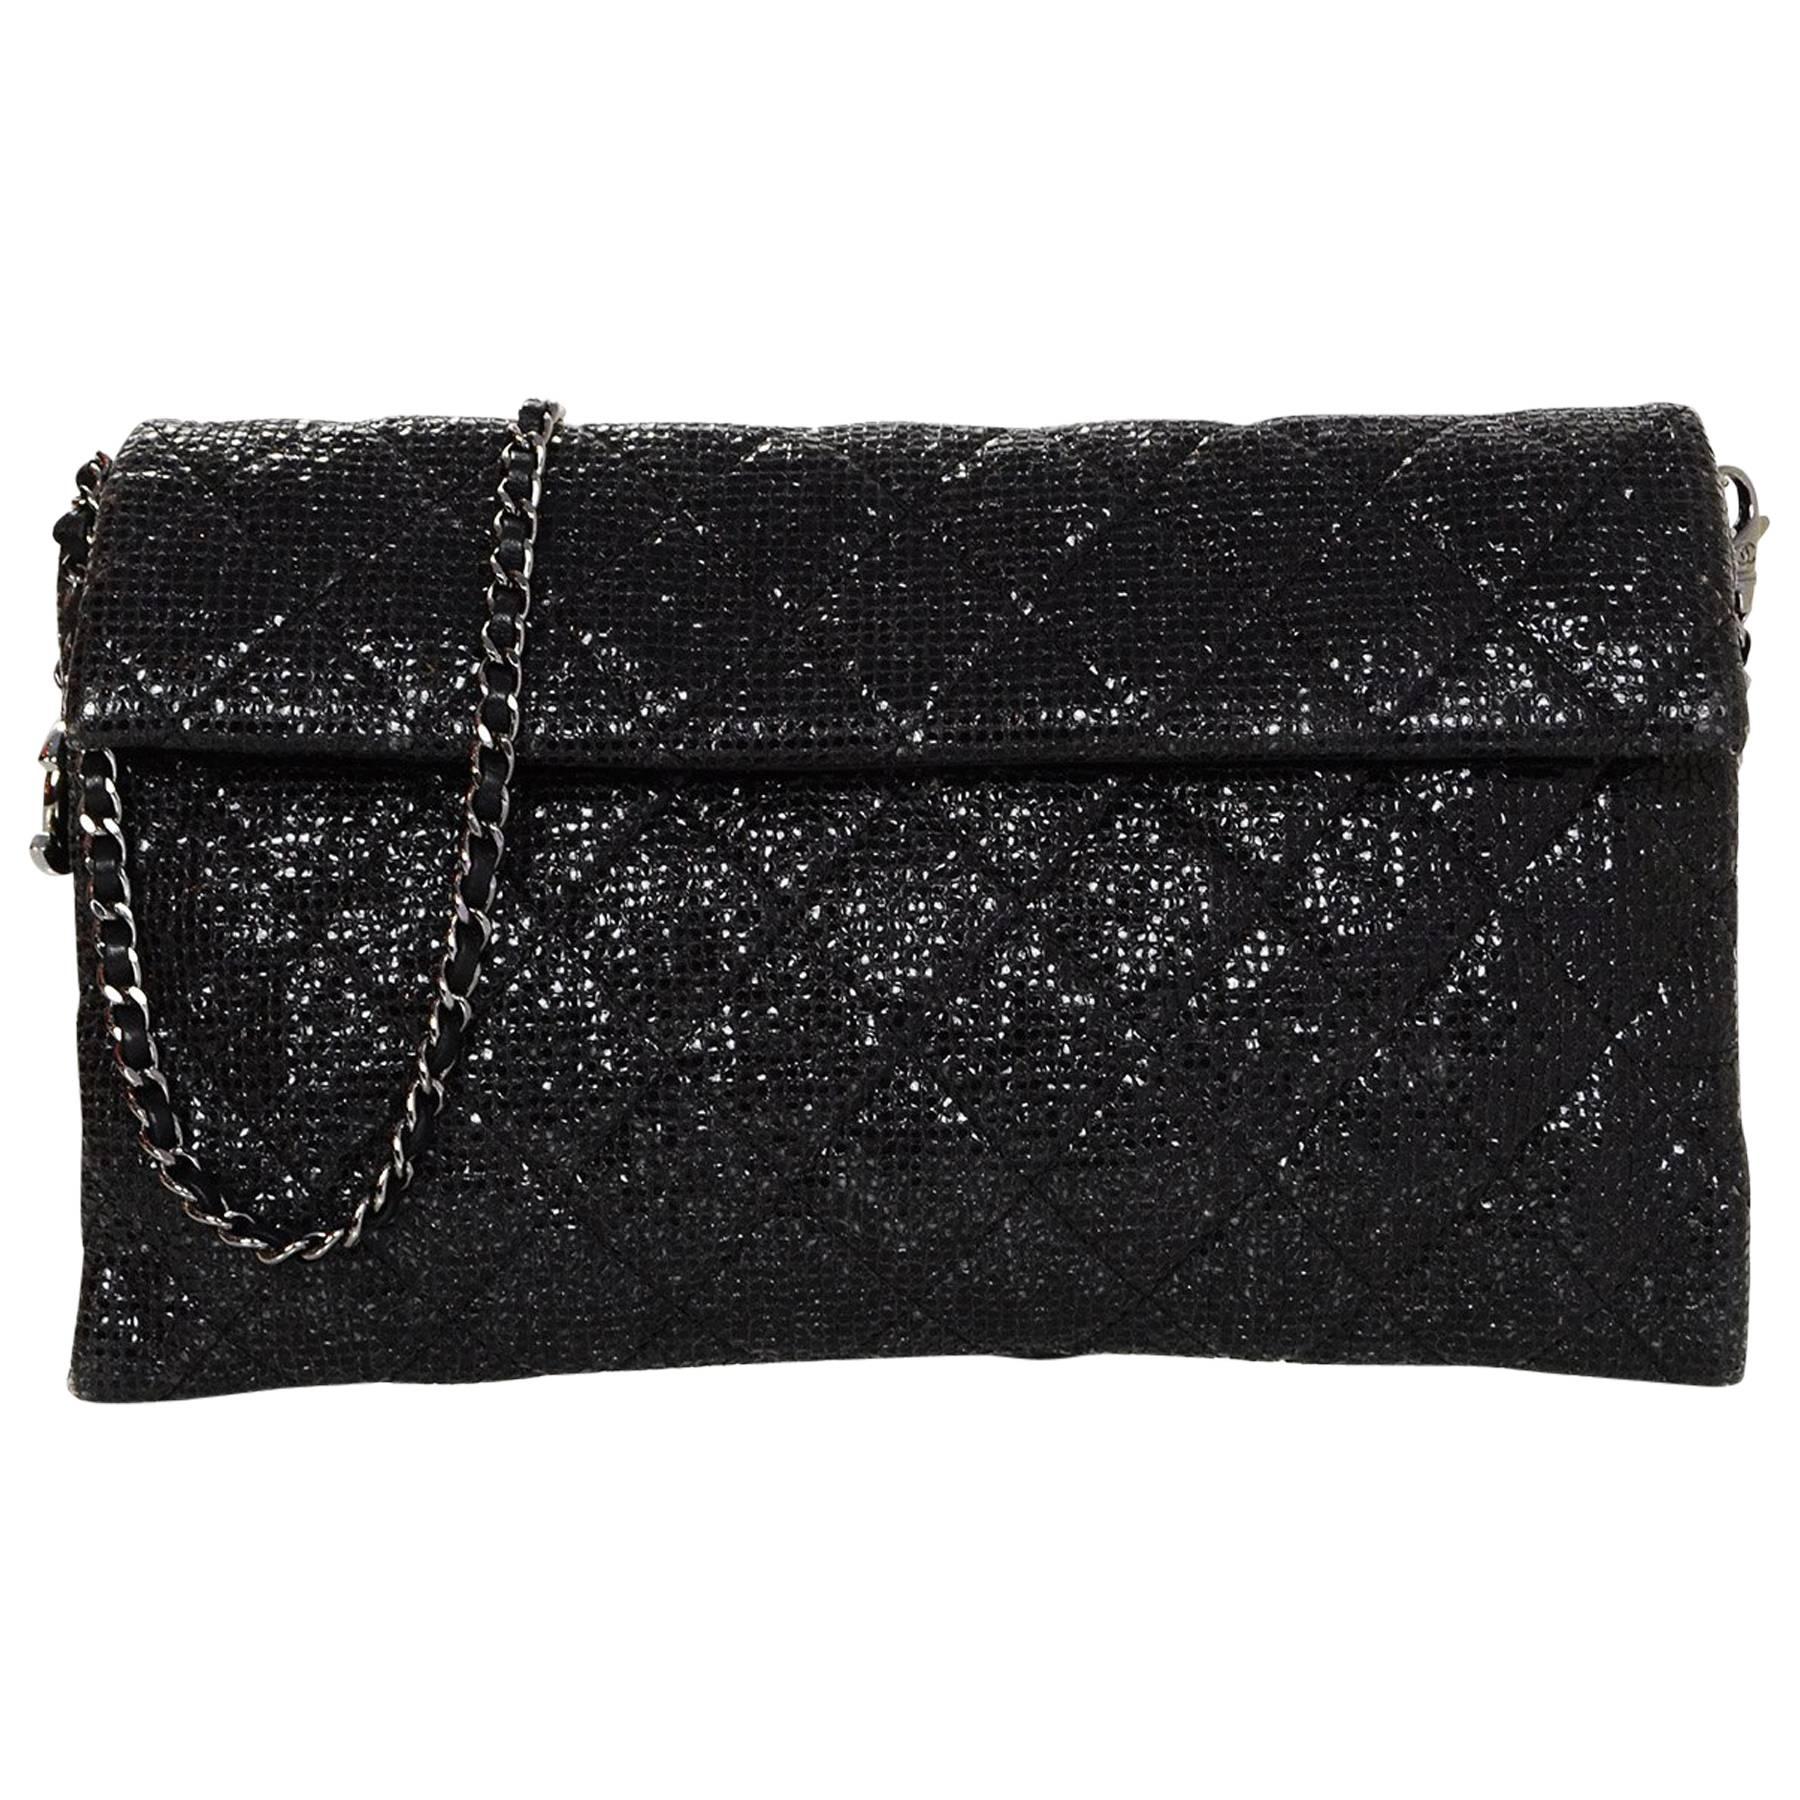 Coco cabas glitter bag Chanel Black in Glitter - 15963244